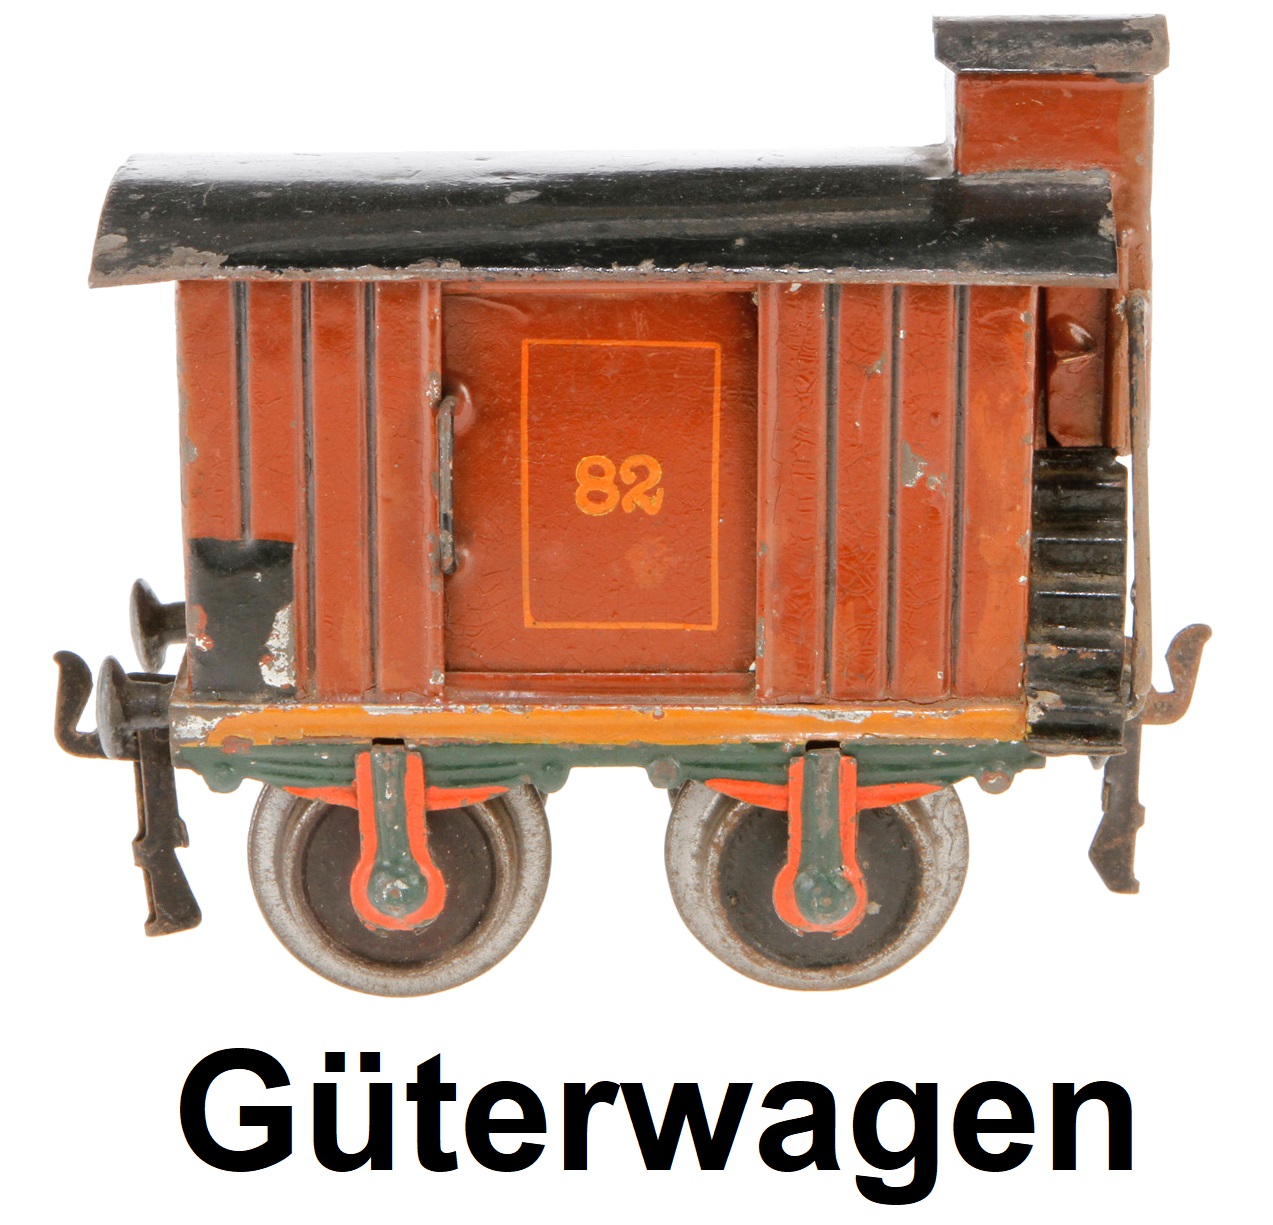 Märklin 1 gauge gedeckter Güterwagen, covered freight car